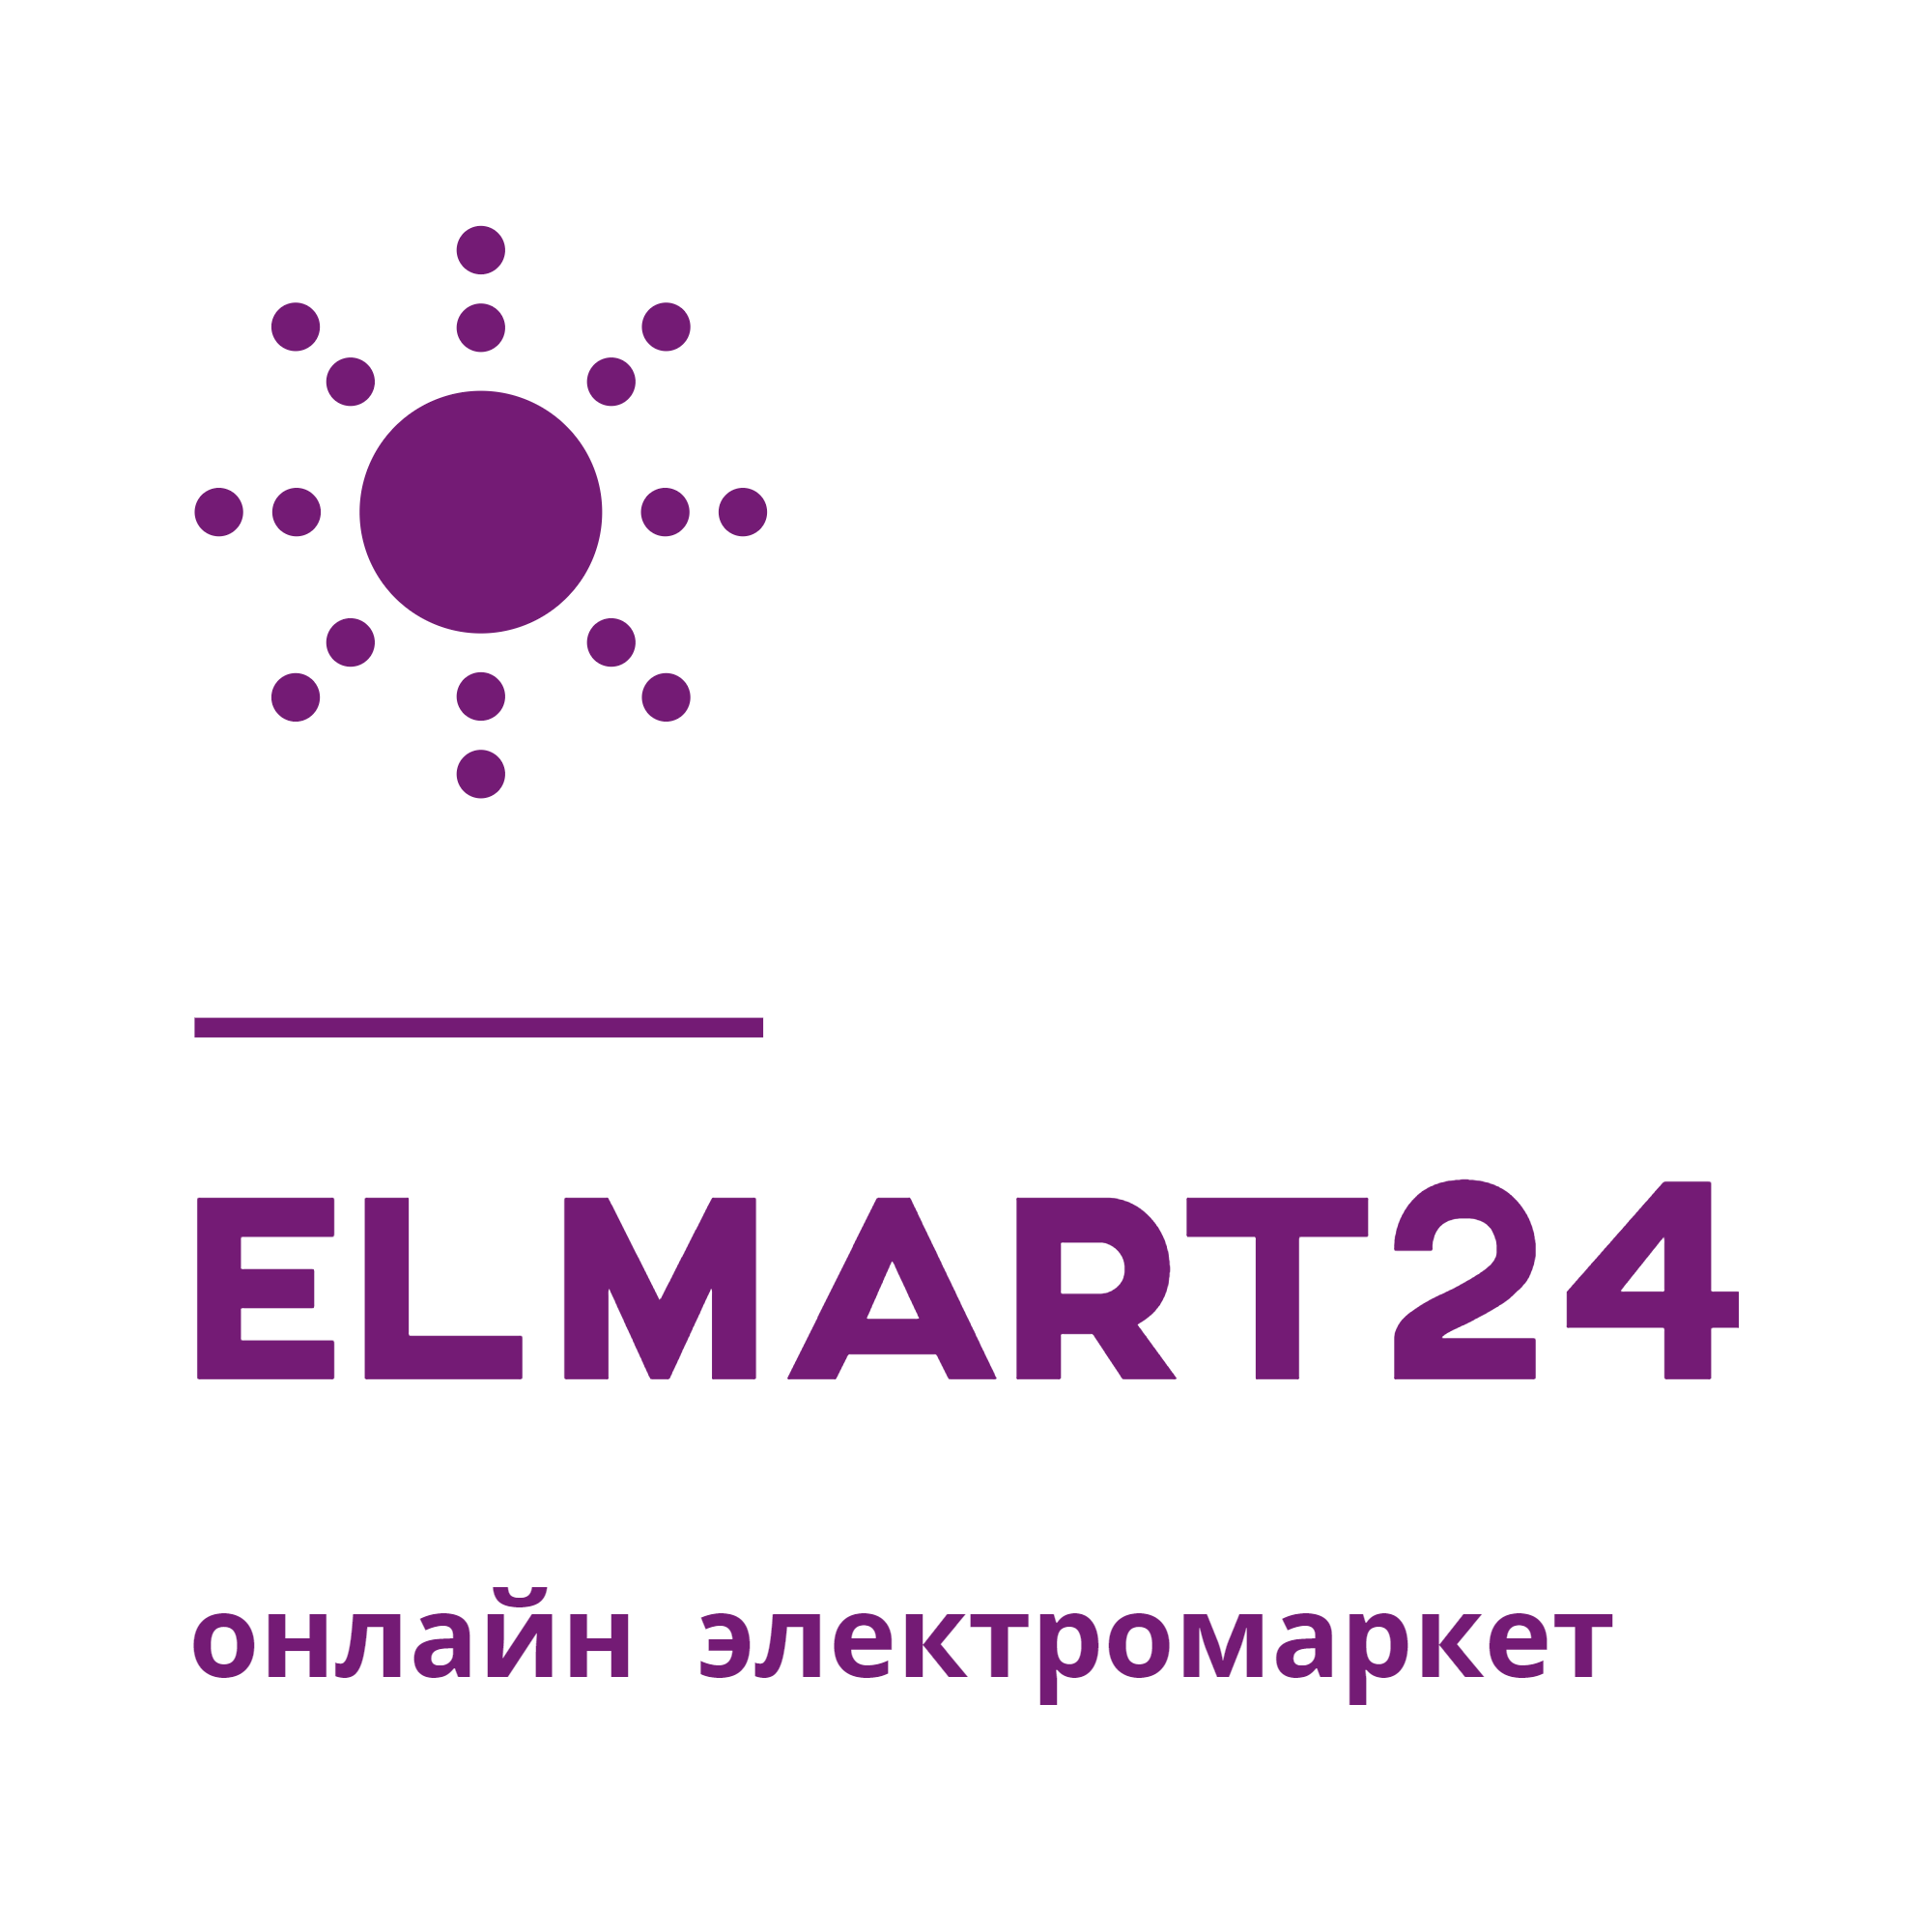 ELMART24 - онлайн электромаркет